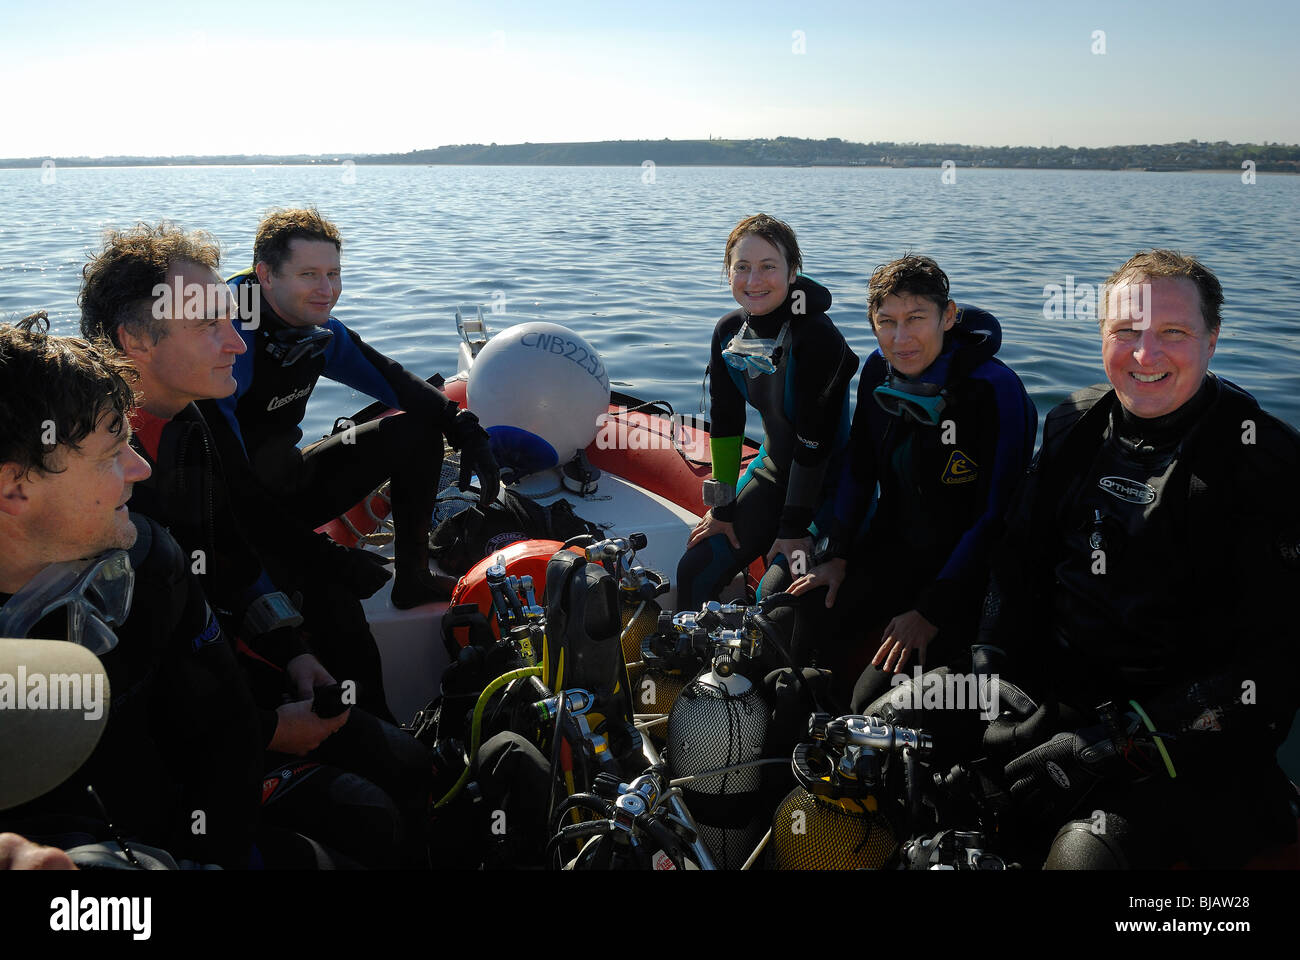 Les amateurs de plongée sous-marine à bord d'un bateau de plongée, Normandie, France Banque D'Images